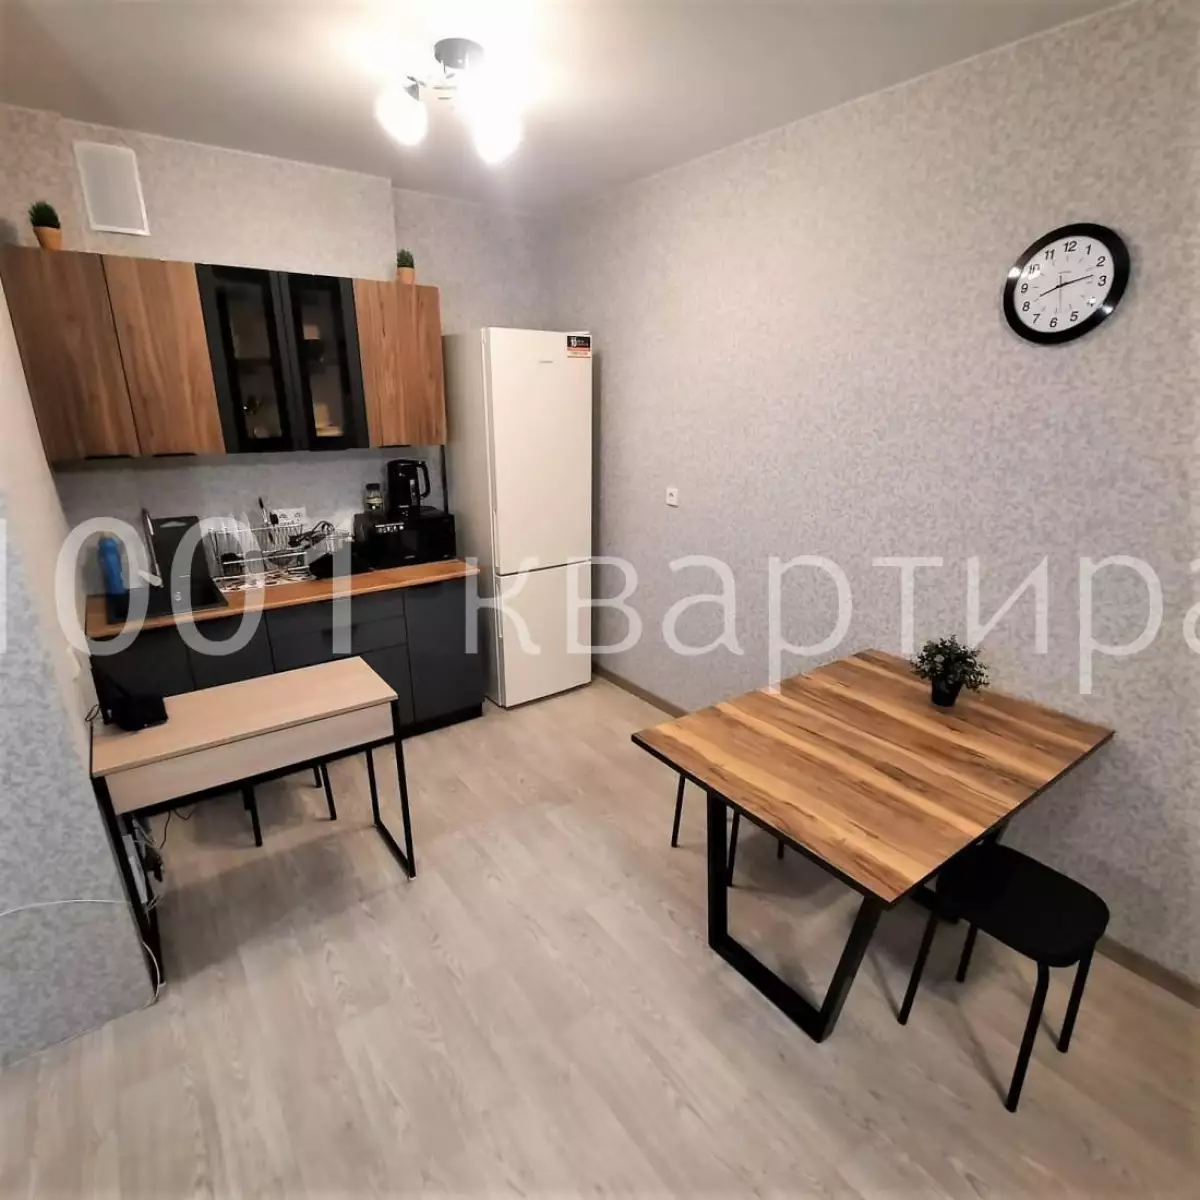 Вариант #140584 для аренды посуточно в Новосибирске Фрунзе, д.252/2 на 4 гостей - фото 5